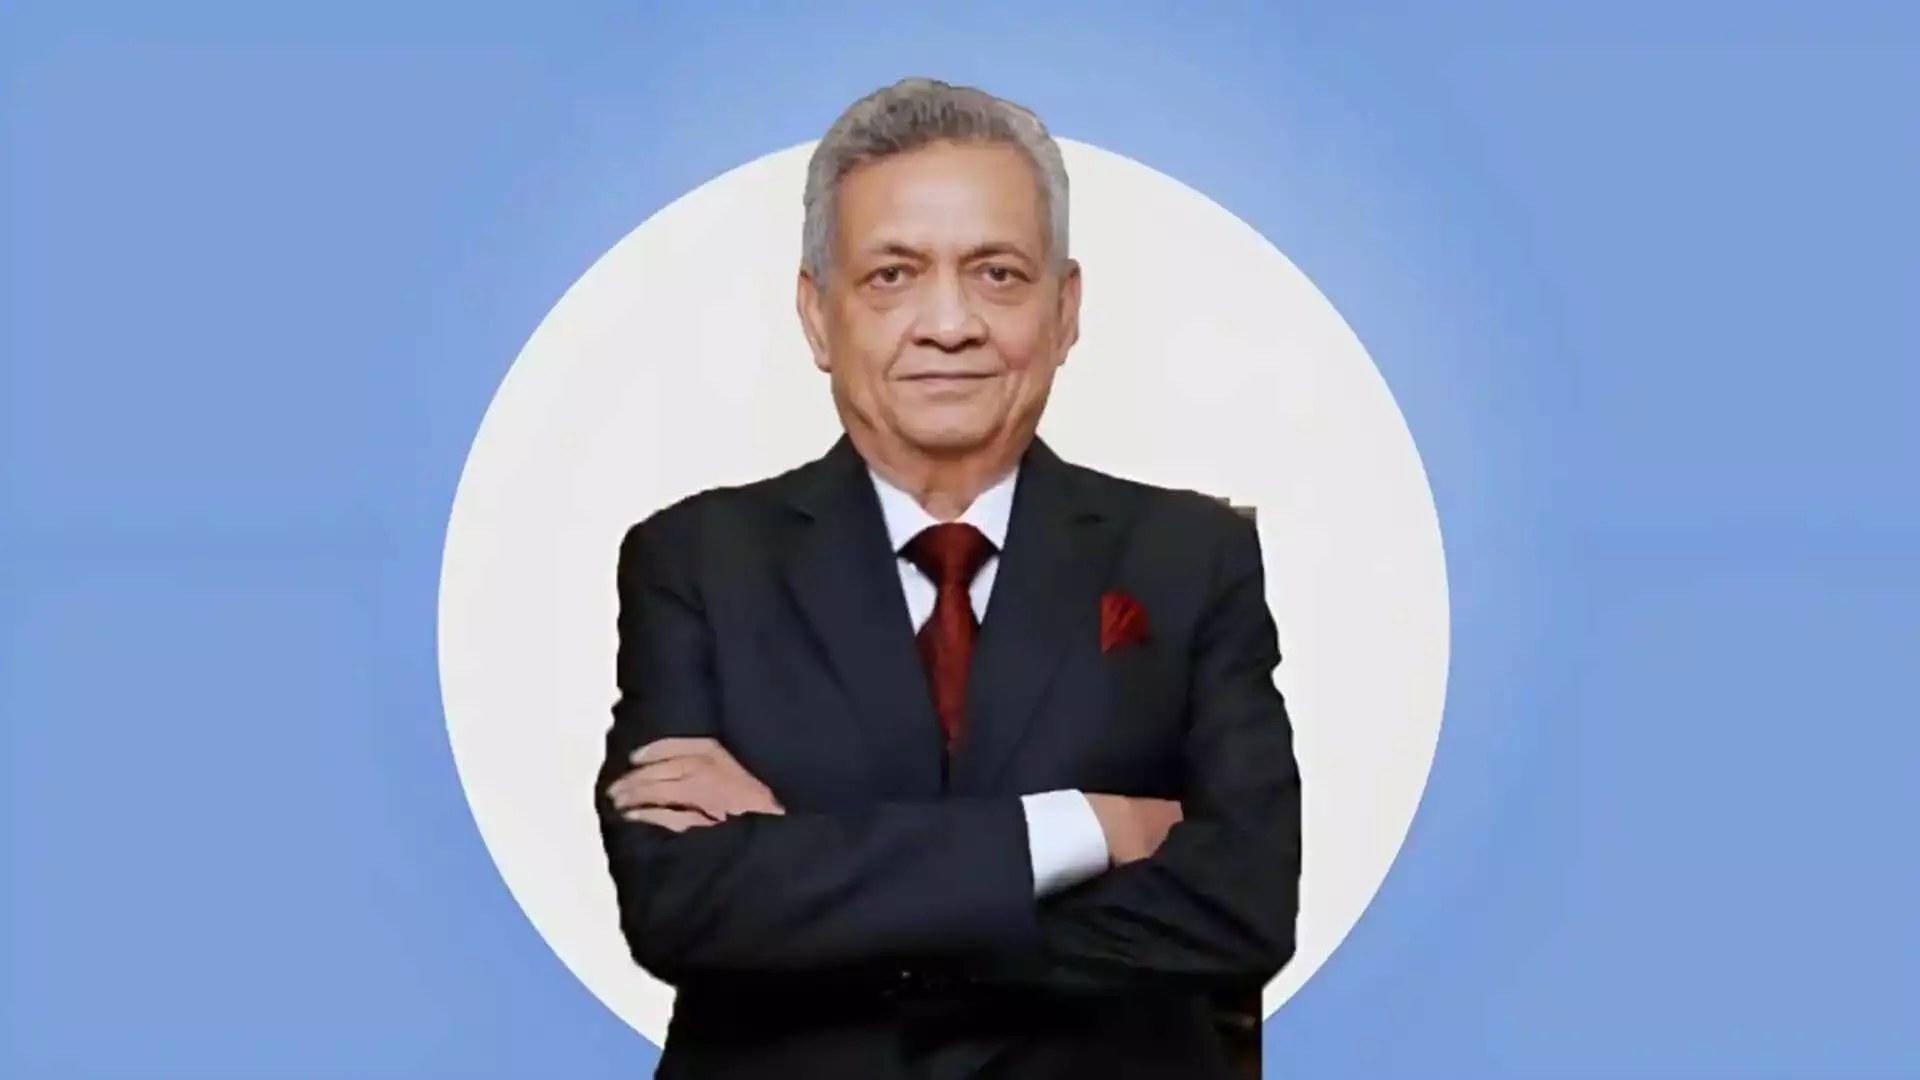 Business : 80 साल की उम्र में भारत के सबसे नए अरबपतियों में से एक